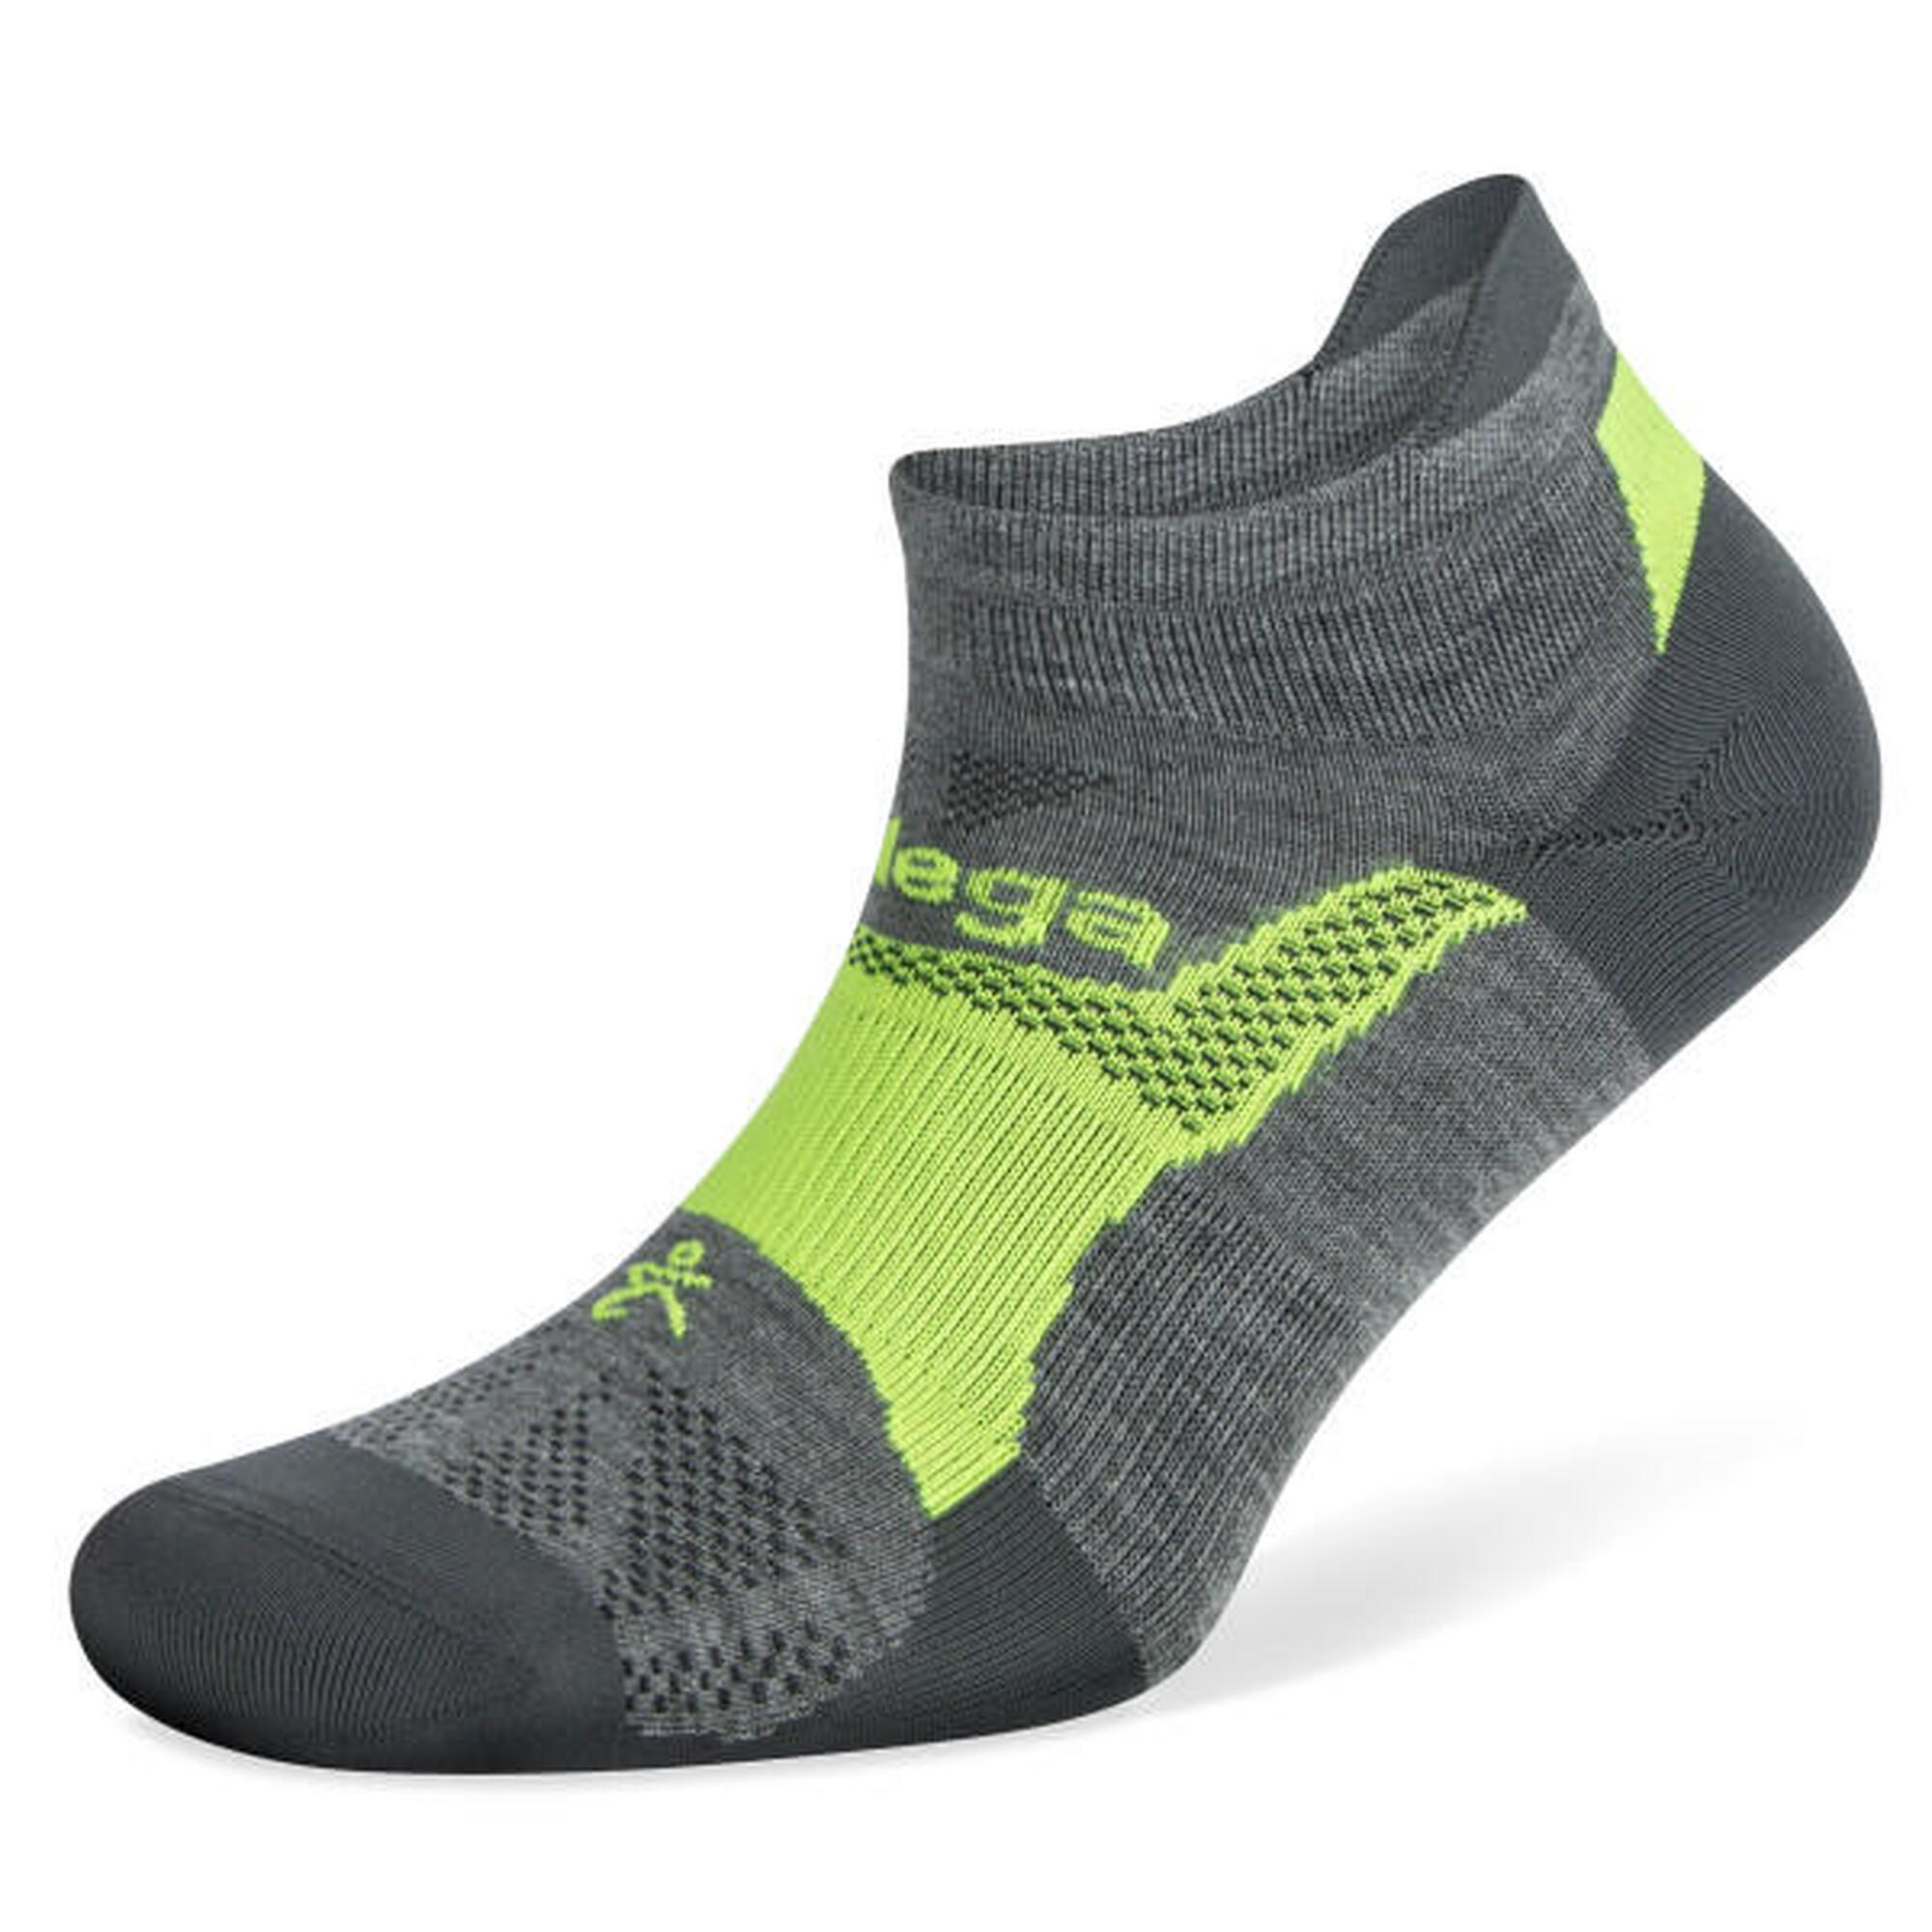 Balega Hidden Dry Socks: Calcetines ligeros, transpirables y cómodos